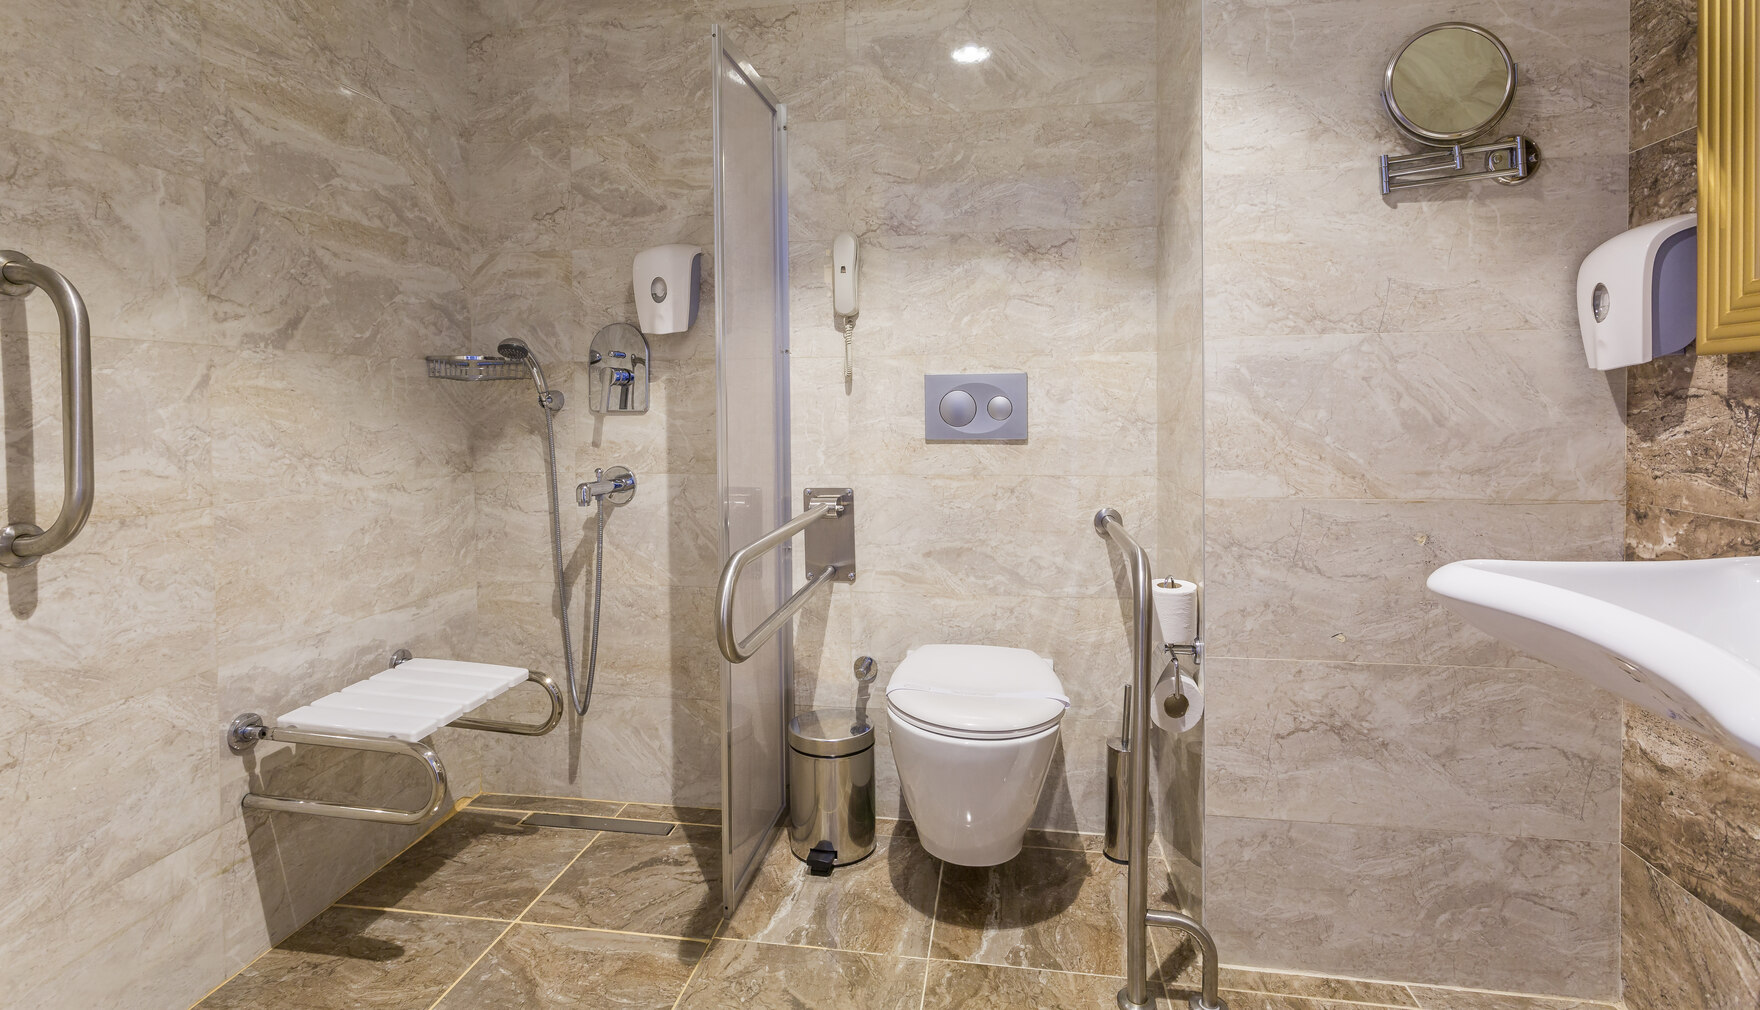 modernes, barrierefreies Badezimmer mit offener, ebenerdiger Dusche mit Haltergriff und Sitz sowie Handläufen rechts und links vom WC